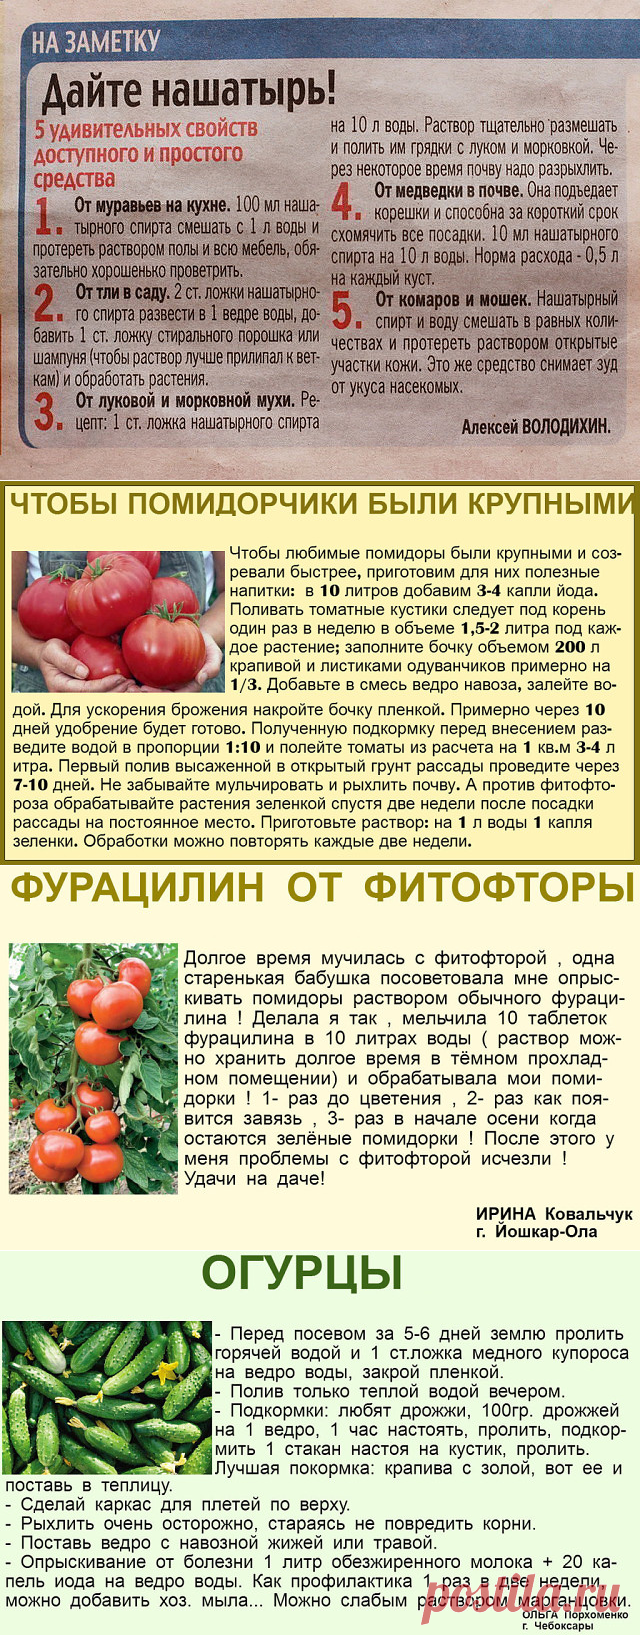 Йод для помидоров в теплице – дозировки, рецепты, польза удобрения